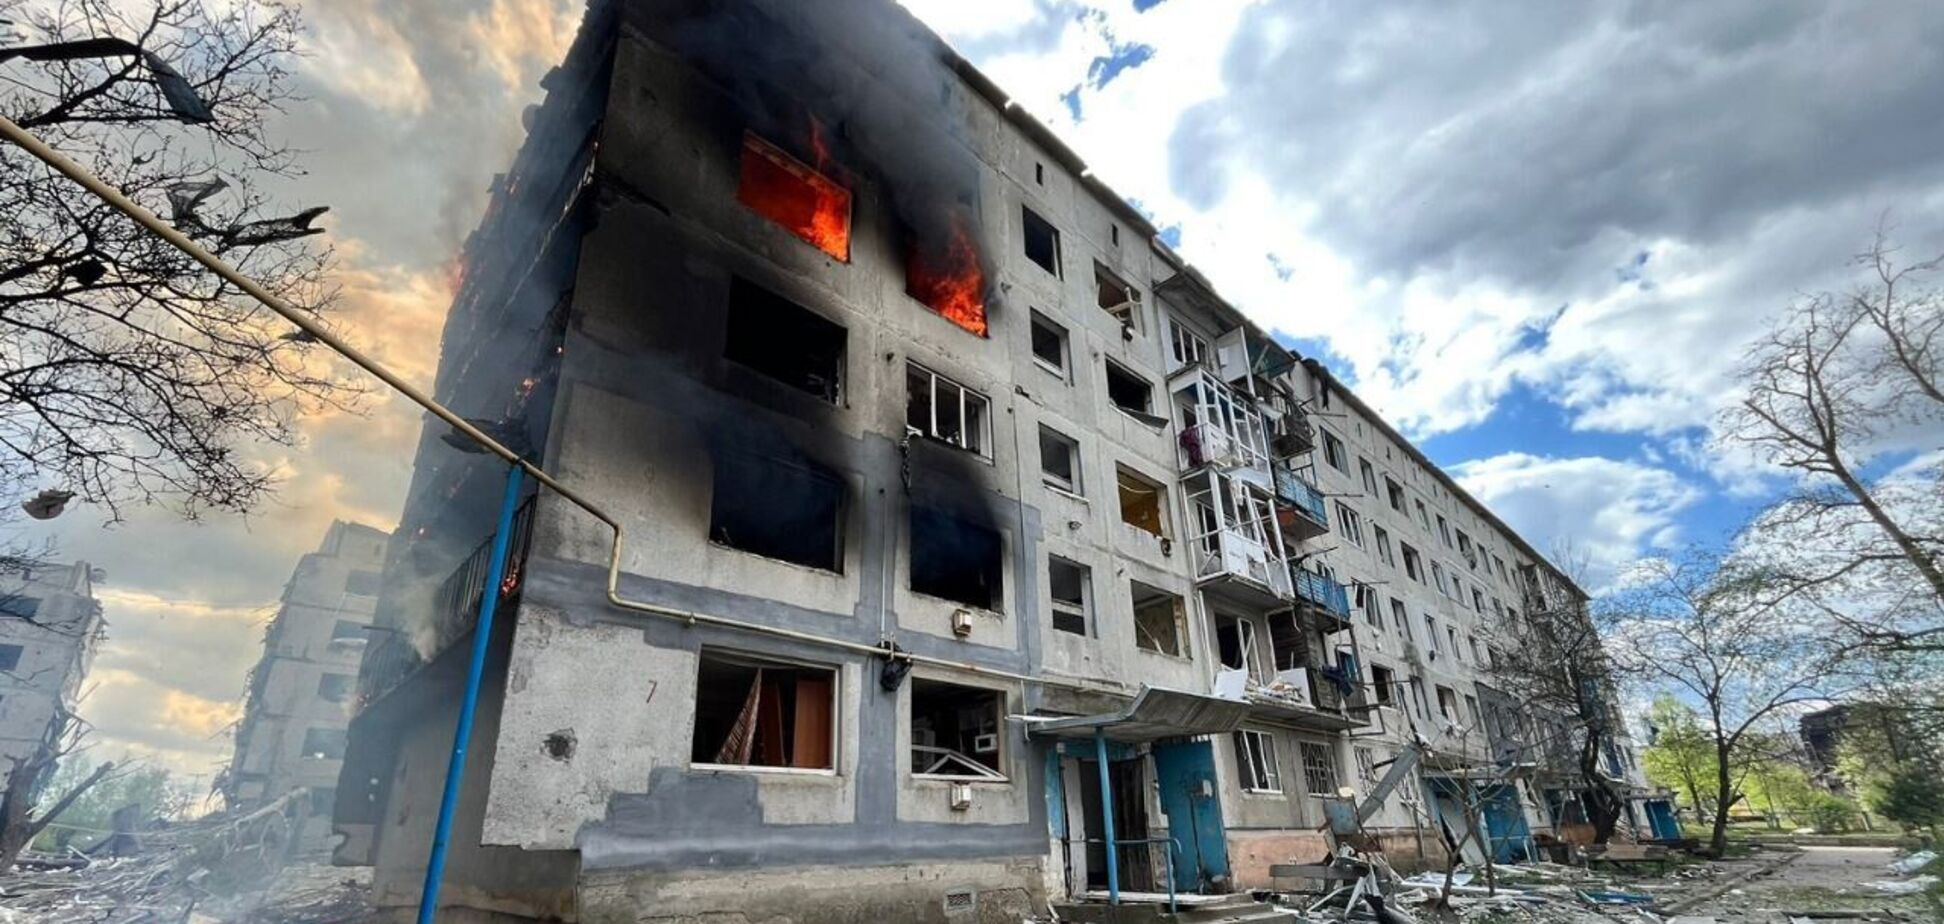 Войска РФ сбросили авиабомбу на 5-этажку в Донецкой области: есть жертва и раненые. Фото